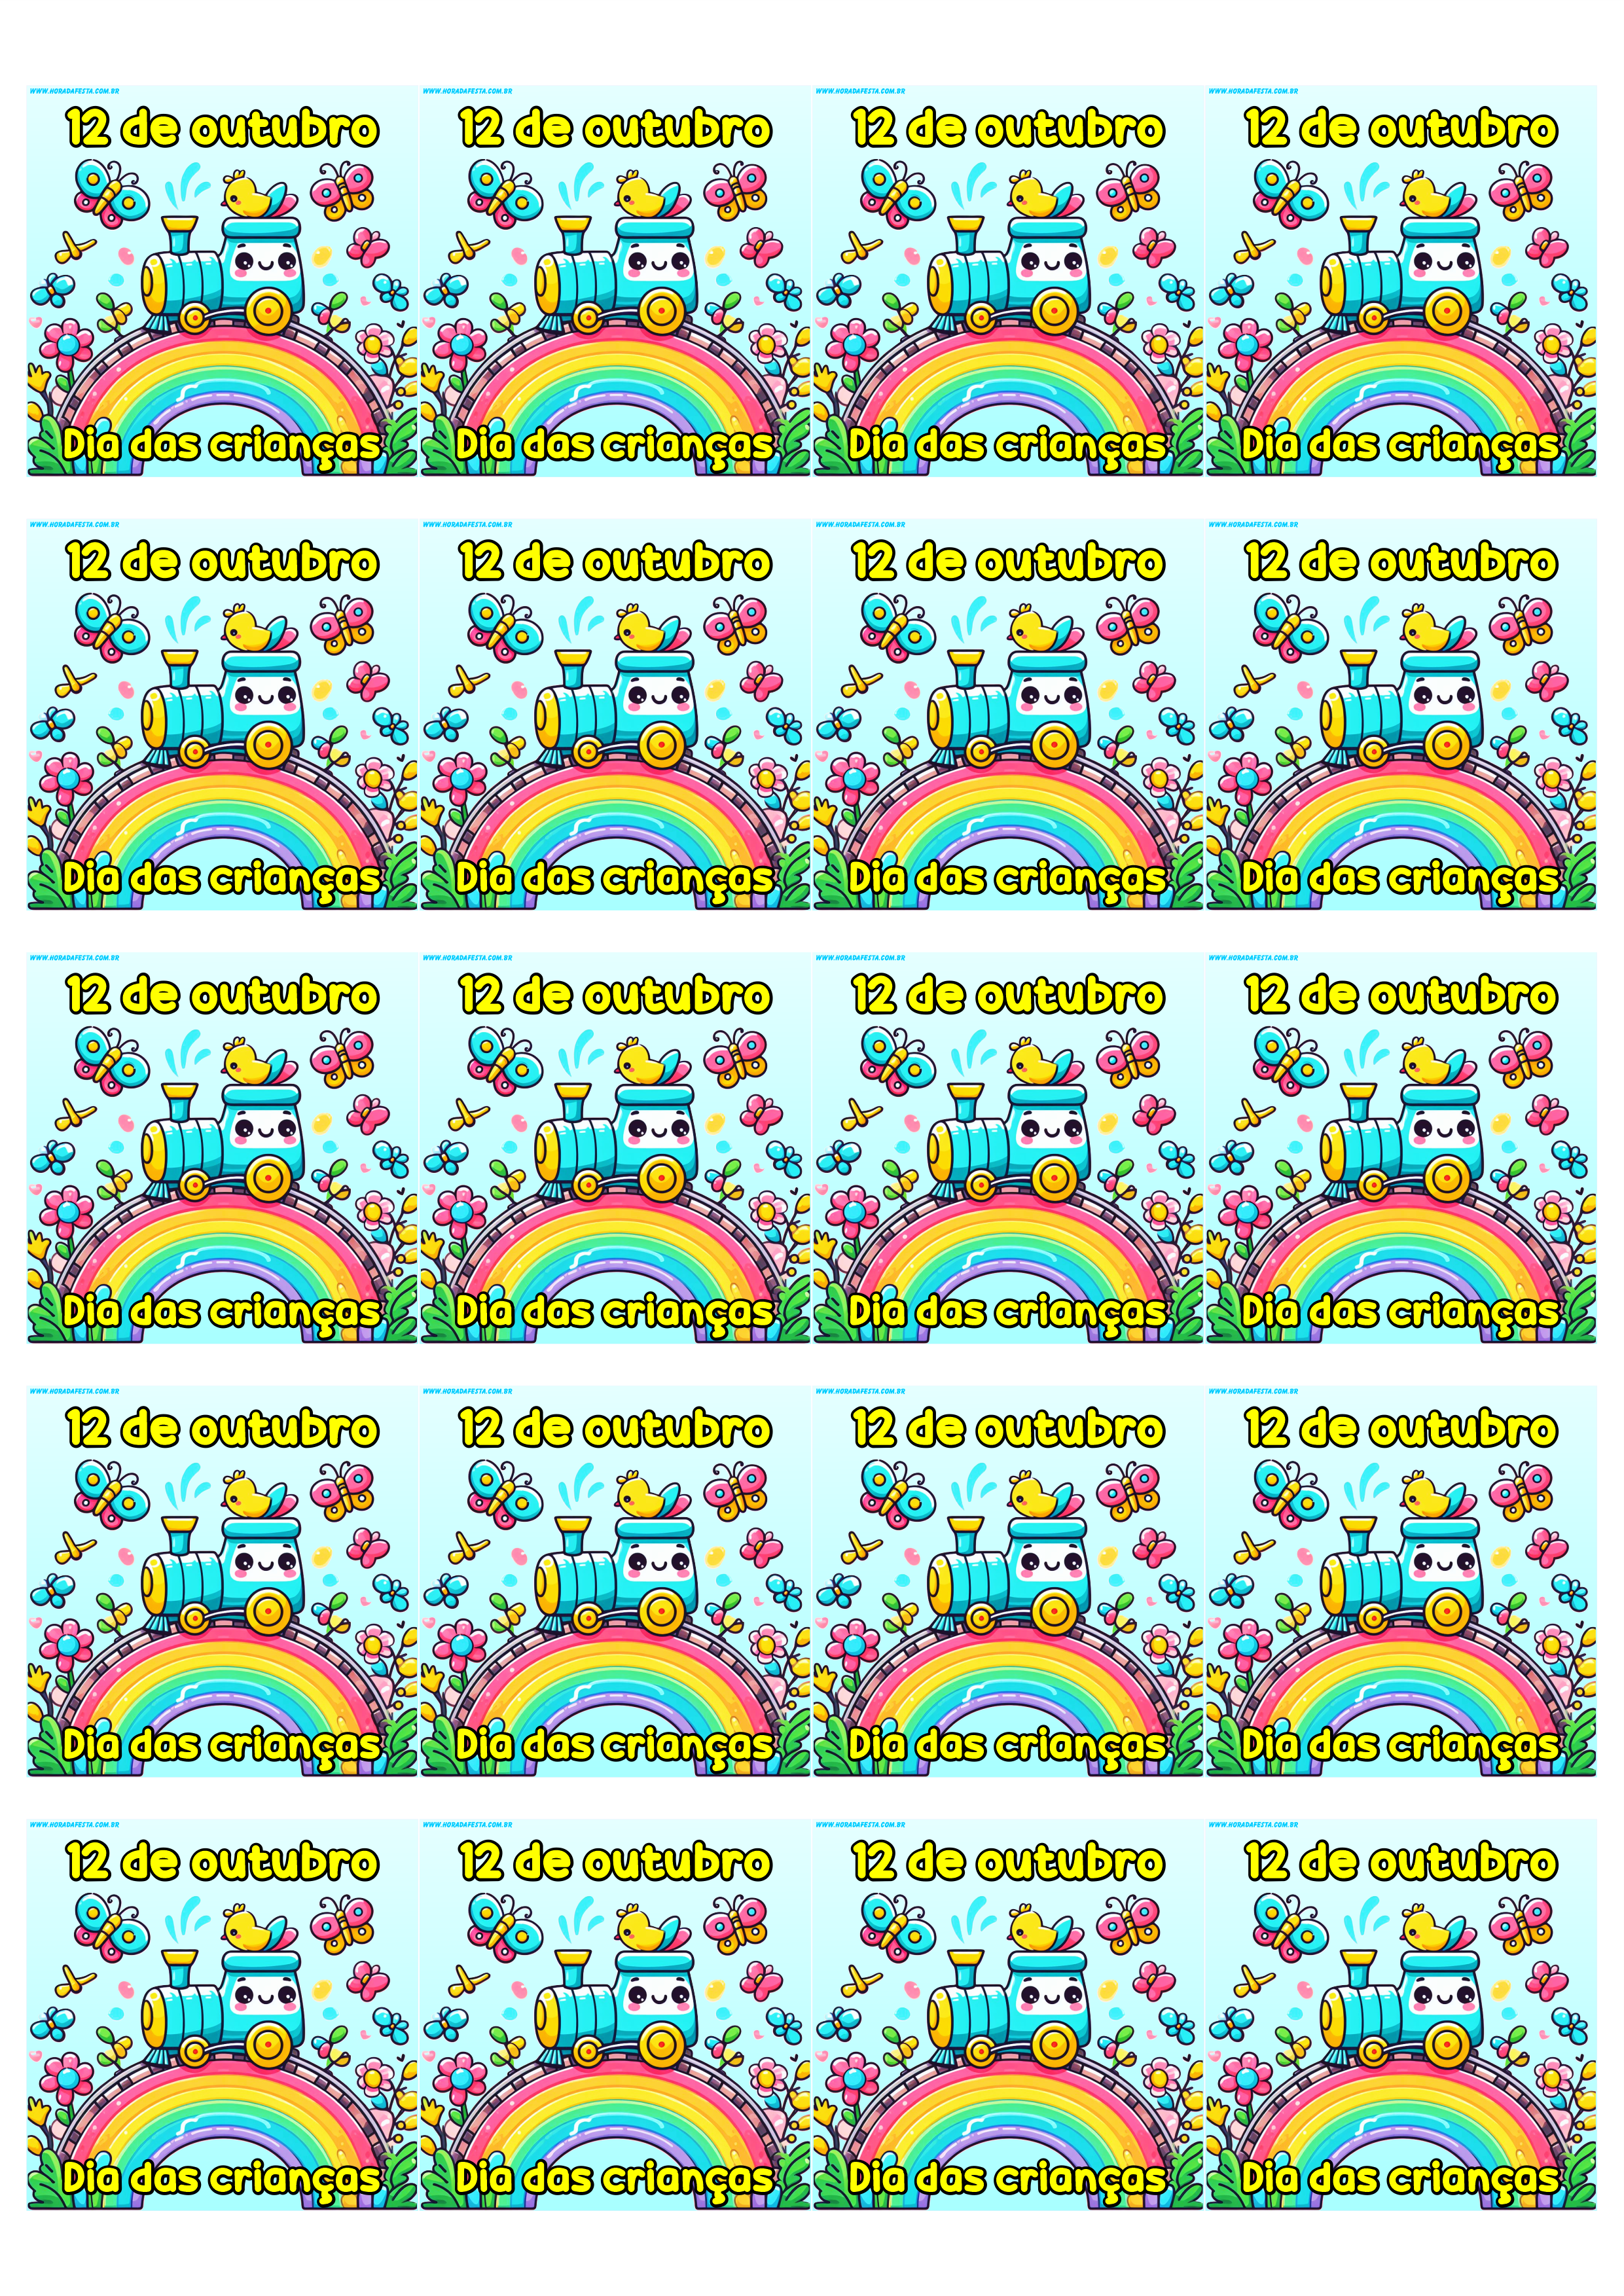 Dia das crianças 12 de outubro adesivo tag sticker etiqueta para decoração painel quadrado artigos de papelaria 20 imagens png